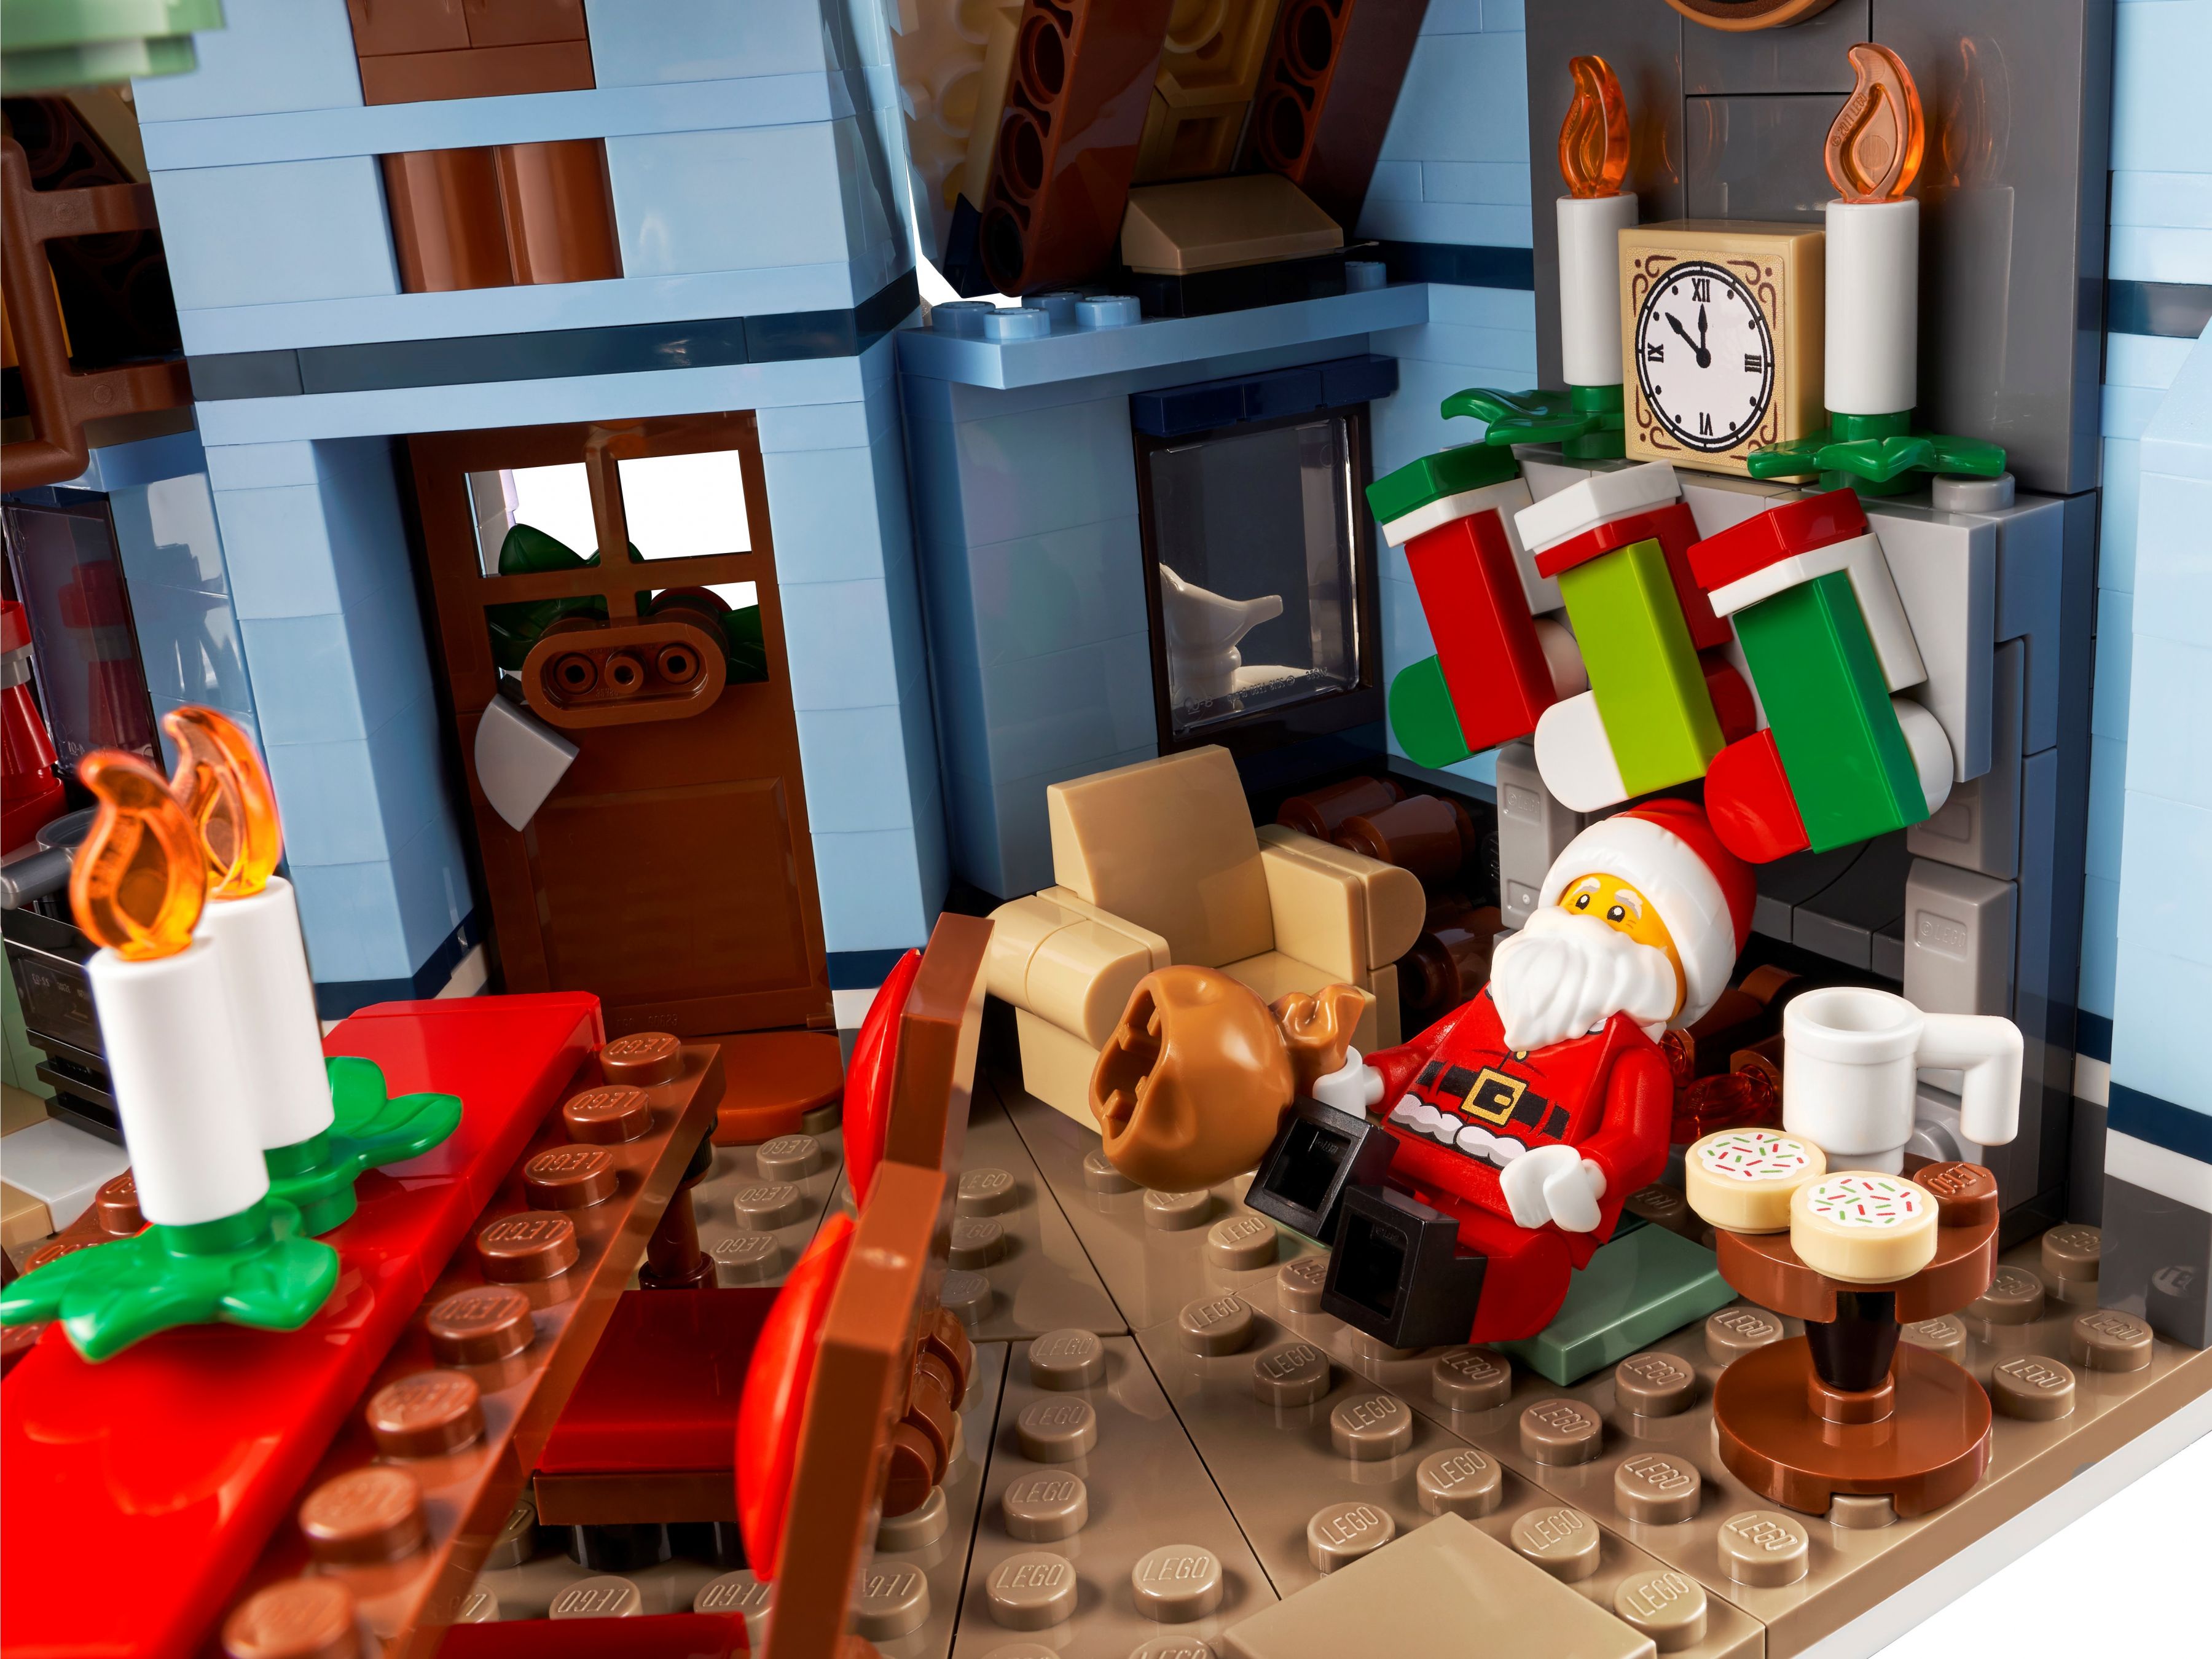 LEGO Advanced Models 10293 Besuch des Weihnachtsmanns LEGO_10293_alt9.jpg